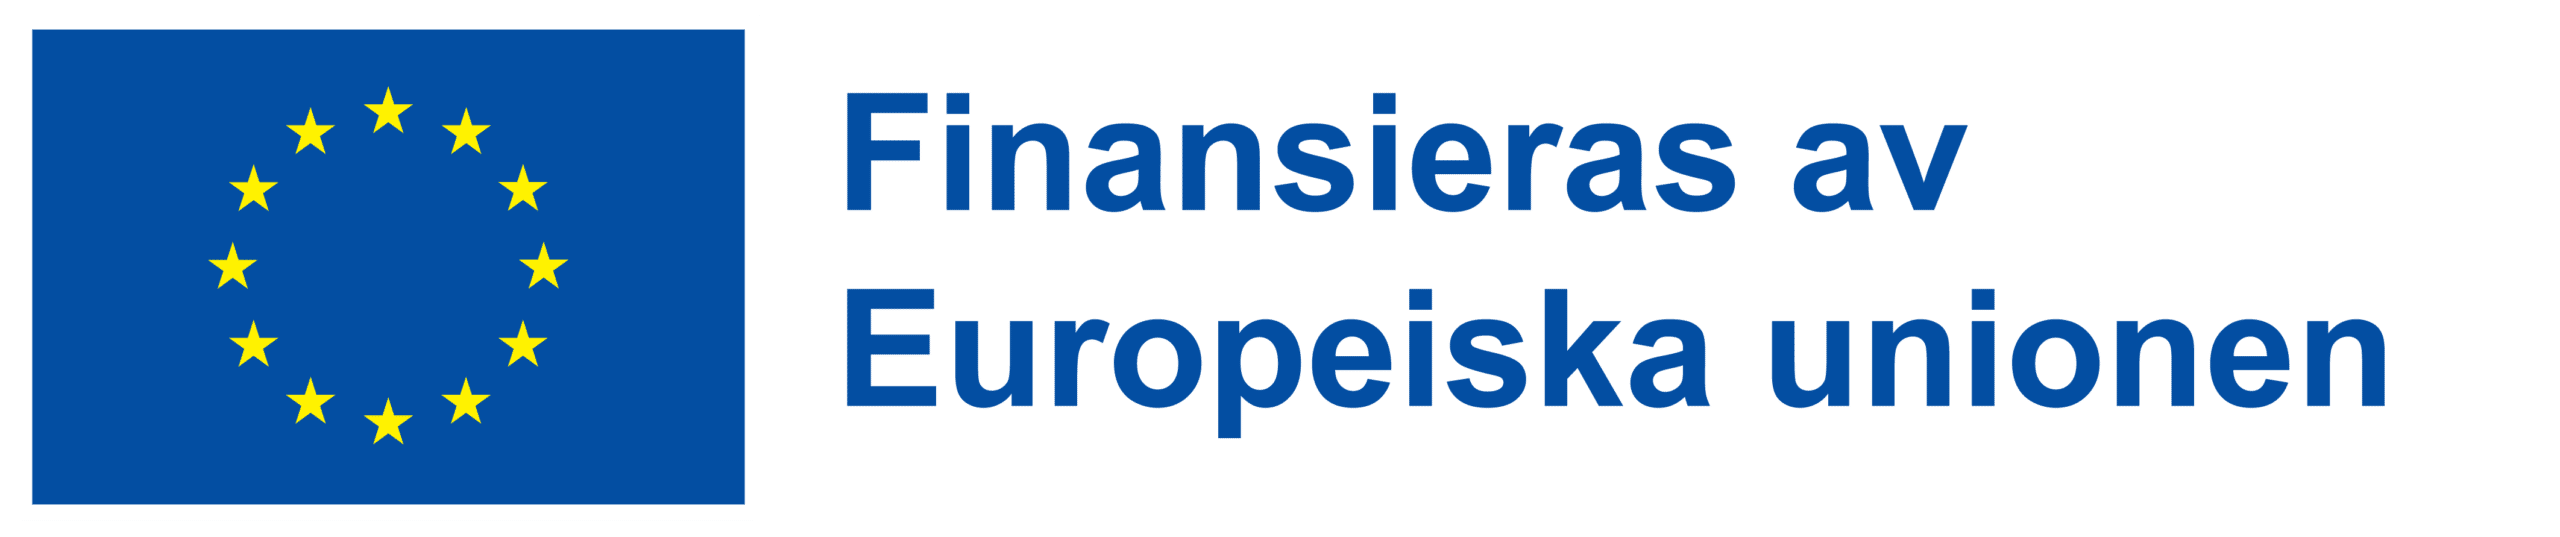 Logo: Finansieras av Europeiska unionen